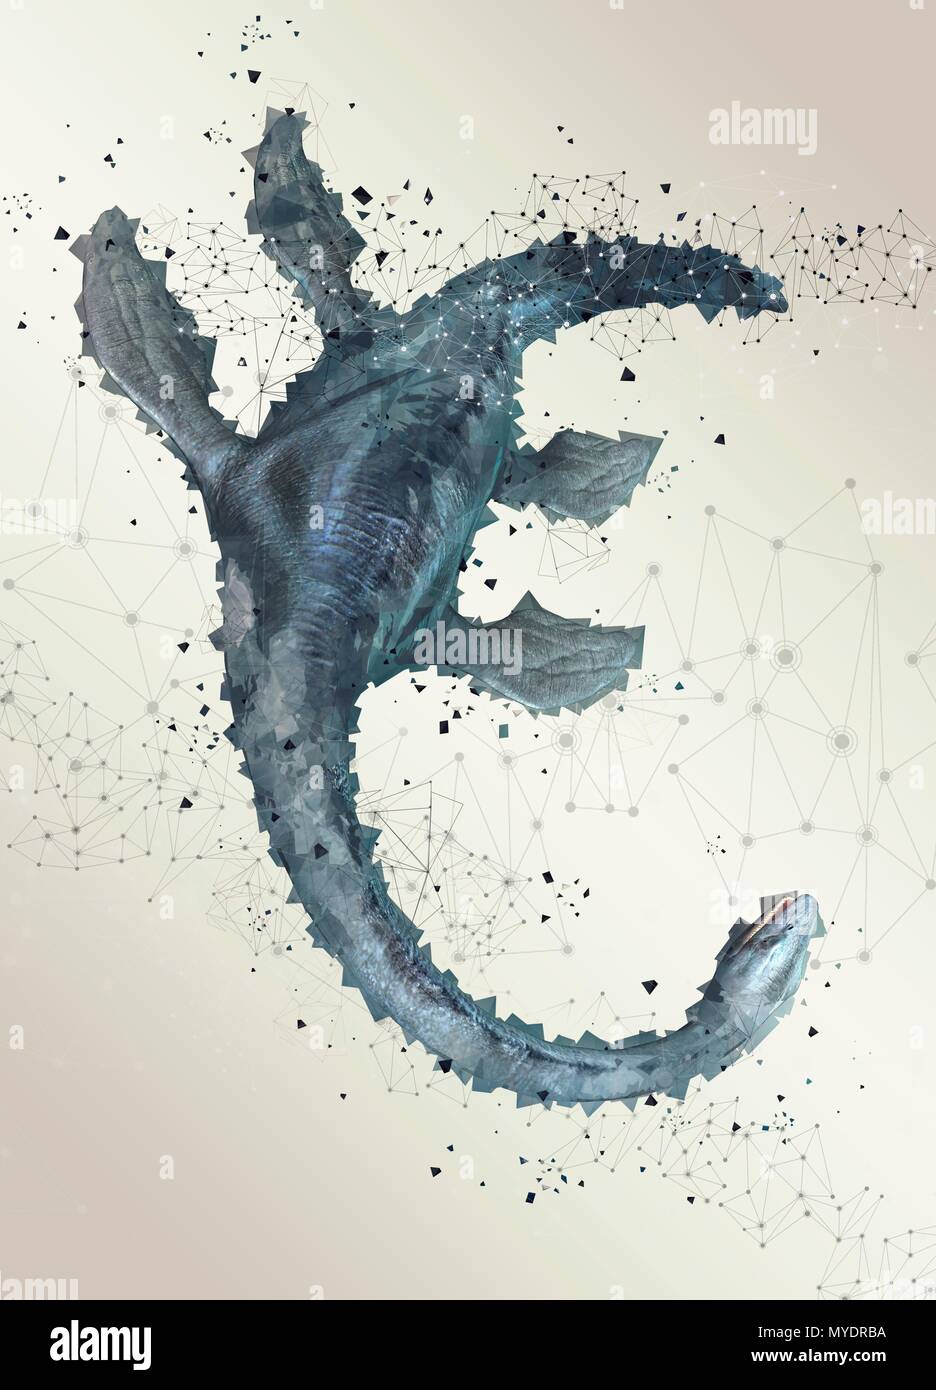 Loch Ness monster, Illustration. Stockfoto